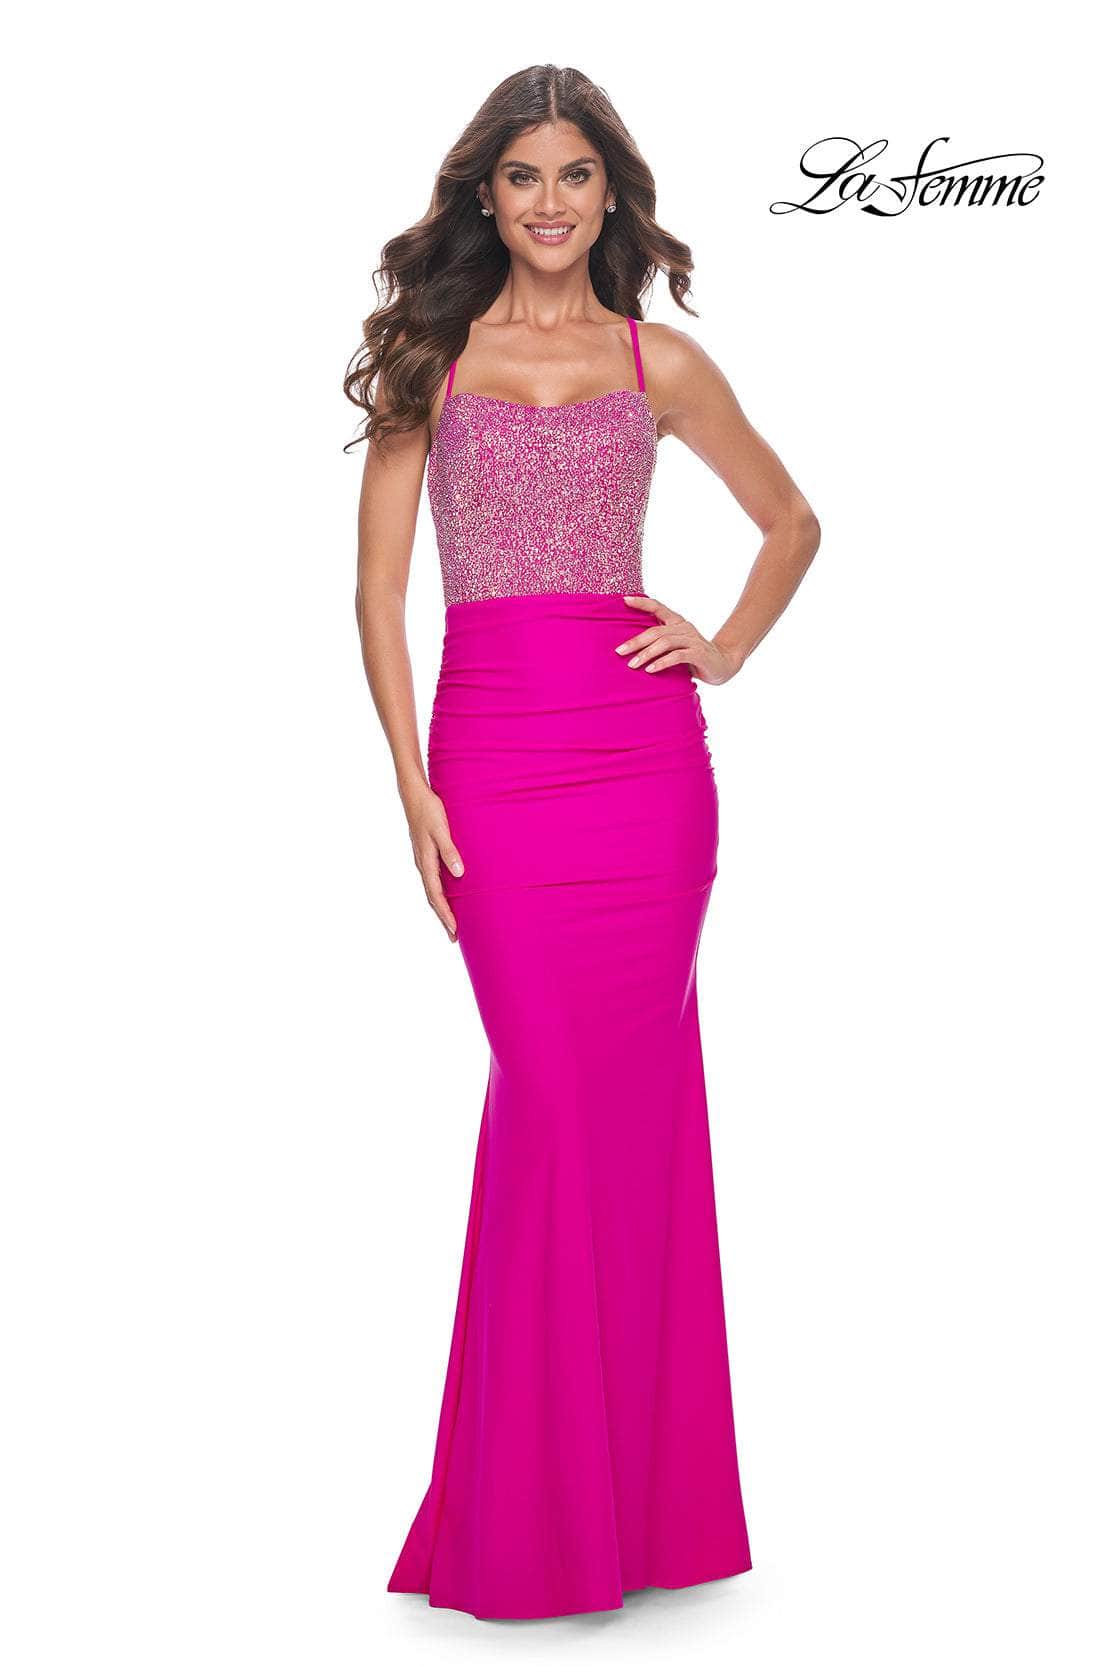 La Femme 32325 - Rhinestone Embellished Sleeveless Prom Dress
